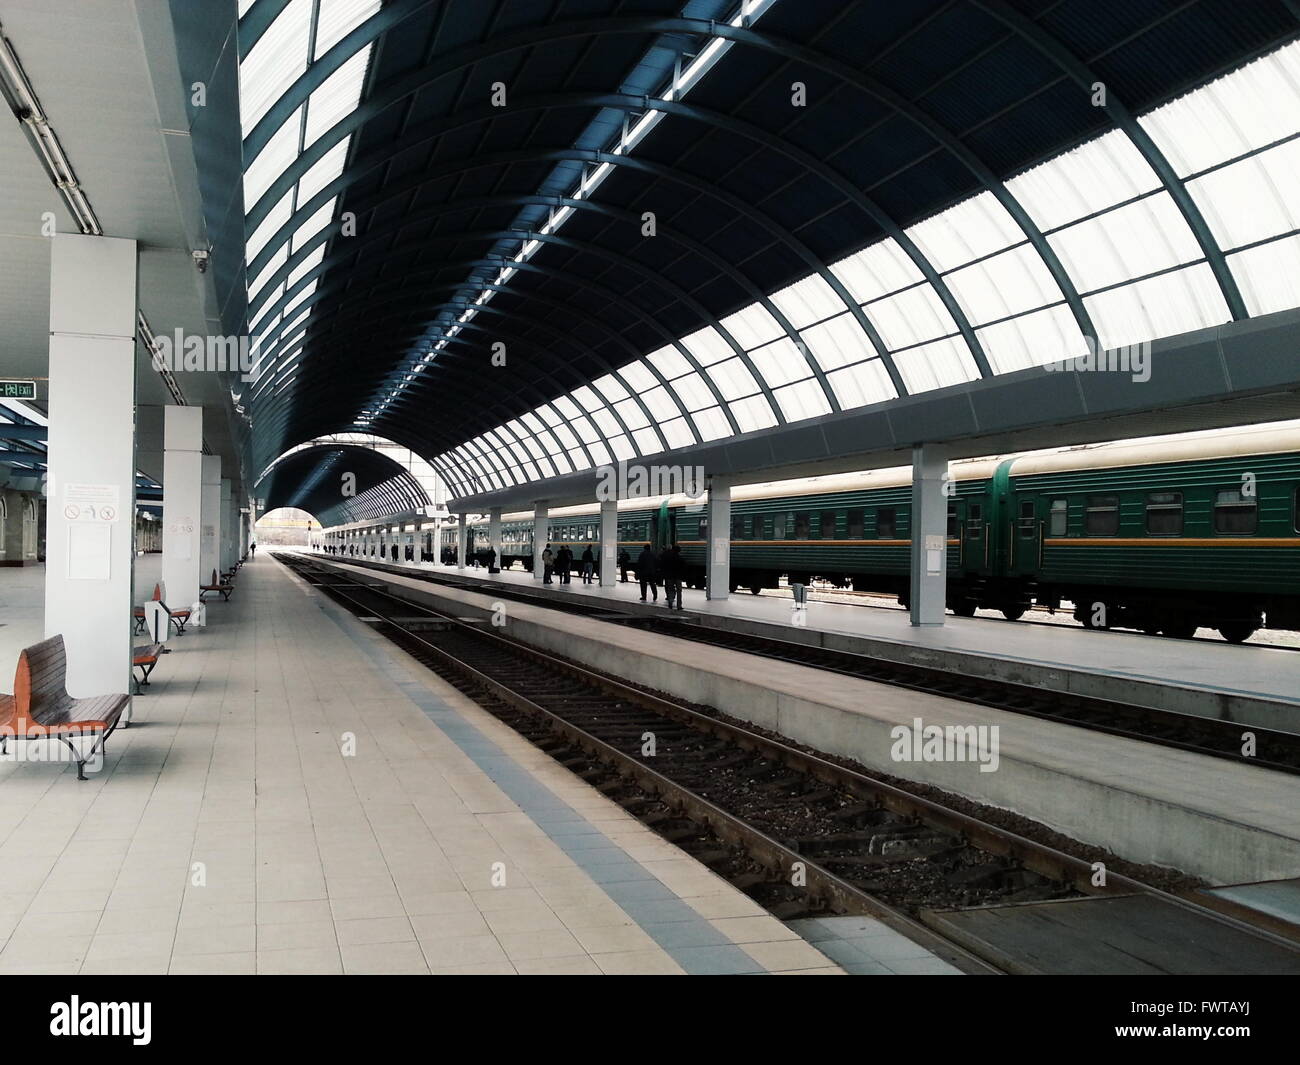 Chisinau, Republik Moldau - 26. November 2013: Zug nach Moskau fahren vom Bahnhof in Chisinau, Moldawien Chisinau wird vorbereitet Stockfoto